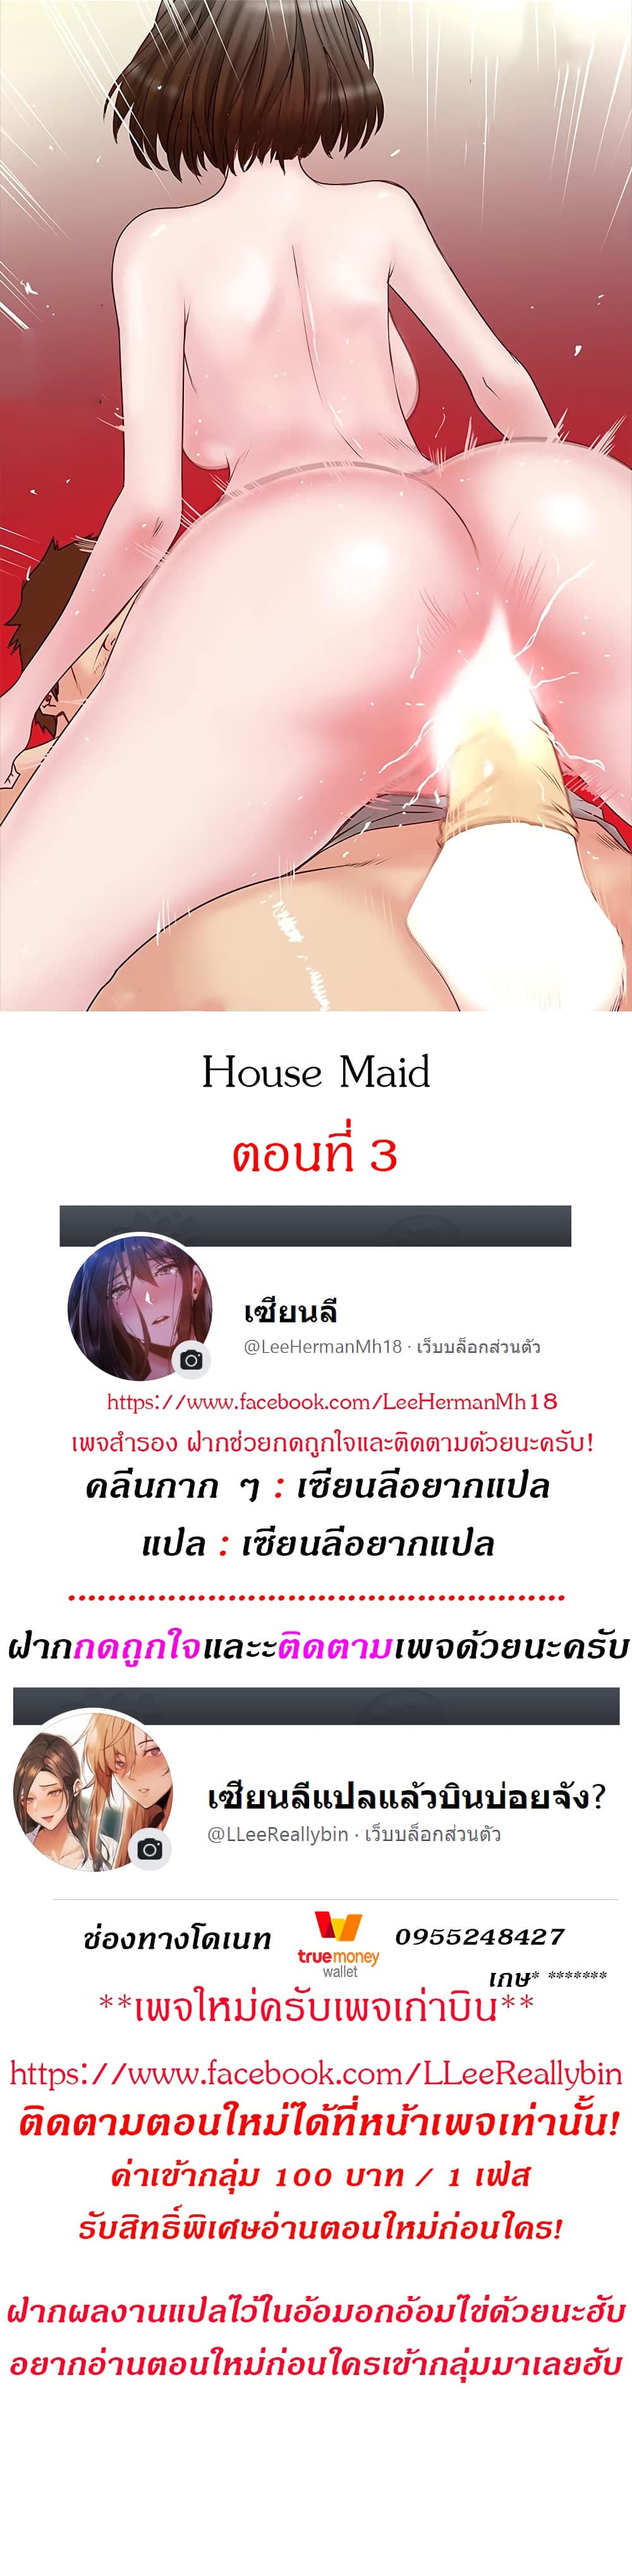 House Maid 3 (1)